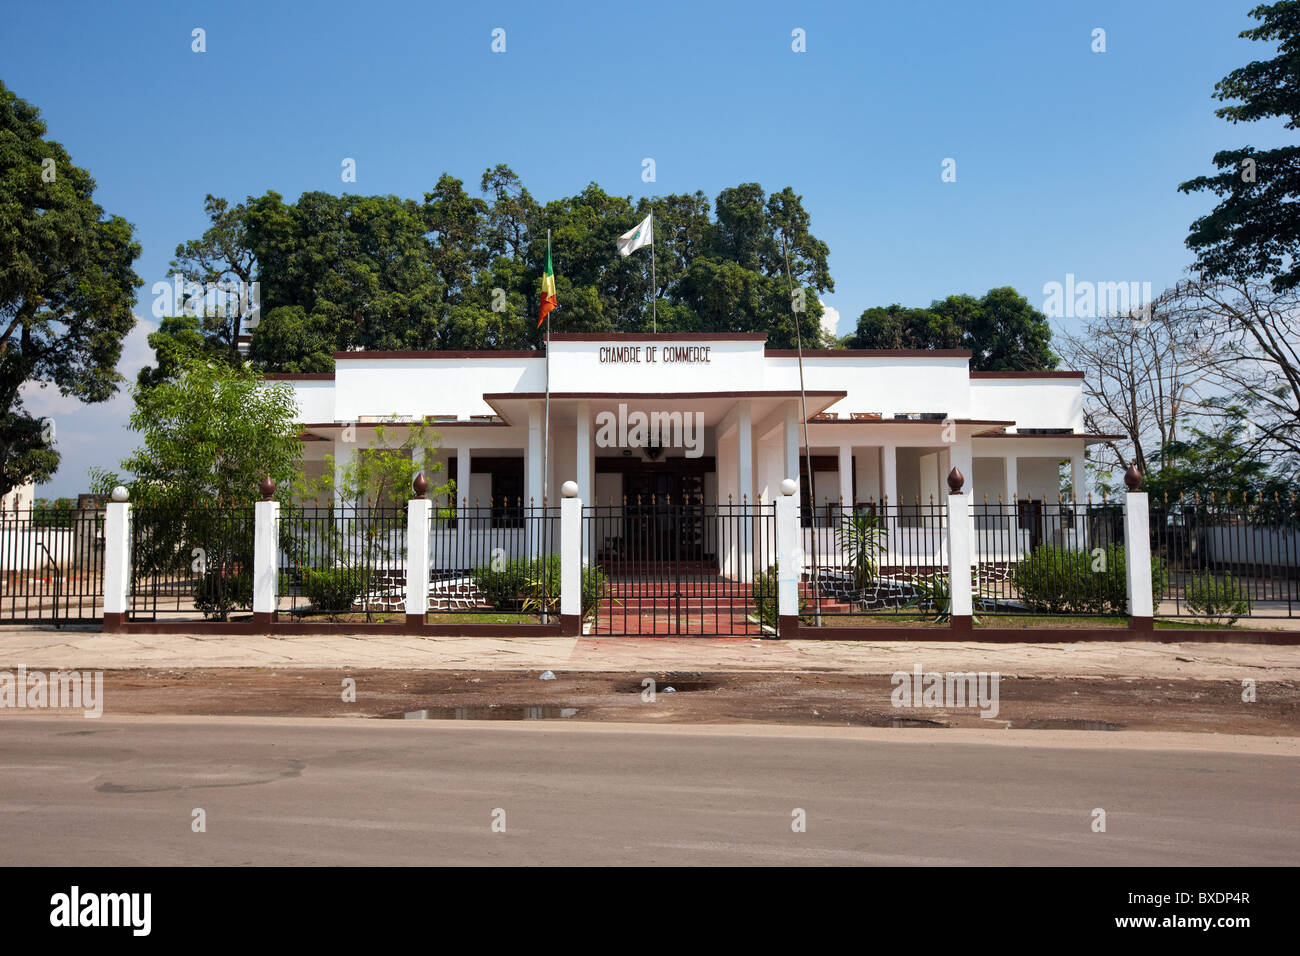 Chambre de Commerce, Brazzaville, Republic of Congo, Africa Stock Photo